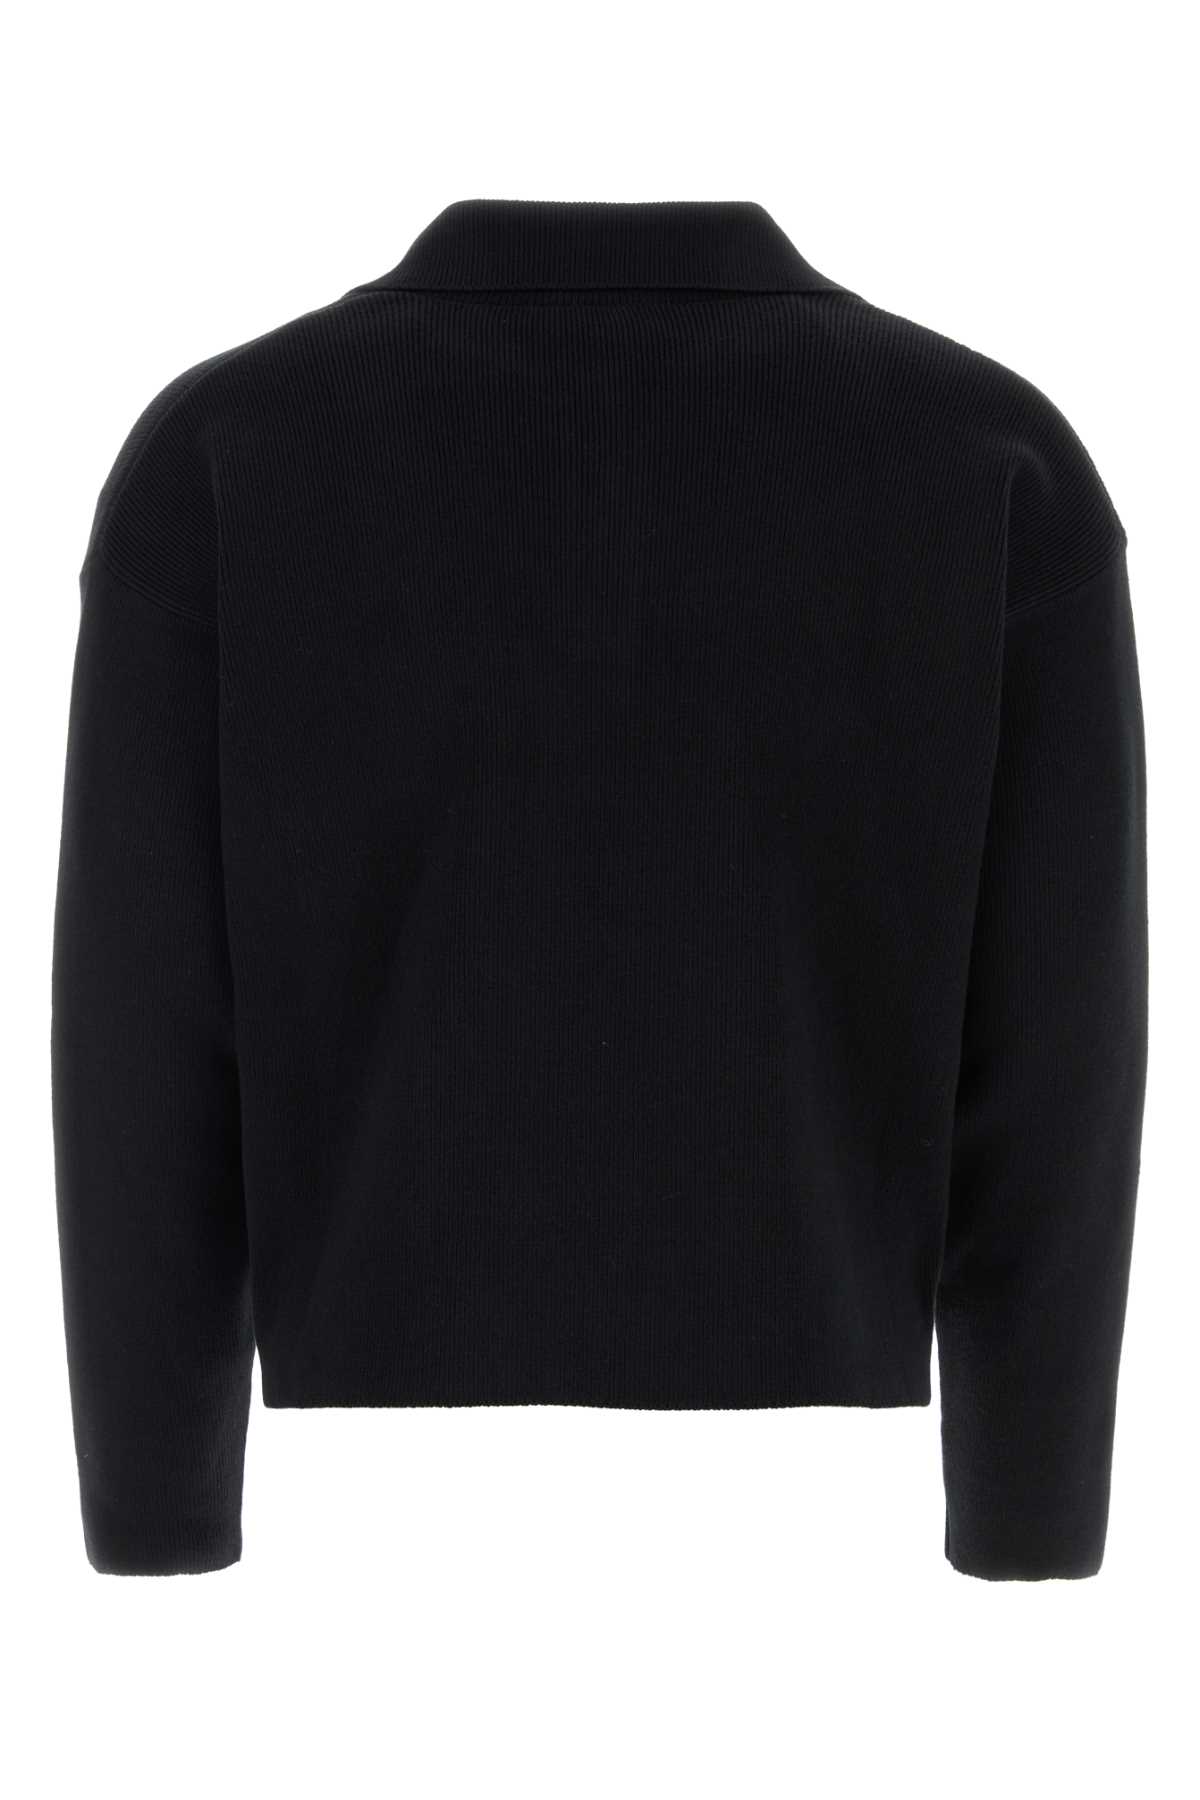 Shop Ami Alexandre Mattiussi Black Stretch Wool Blend Sweater